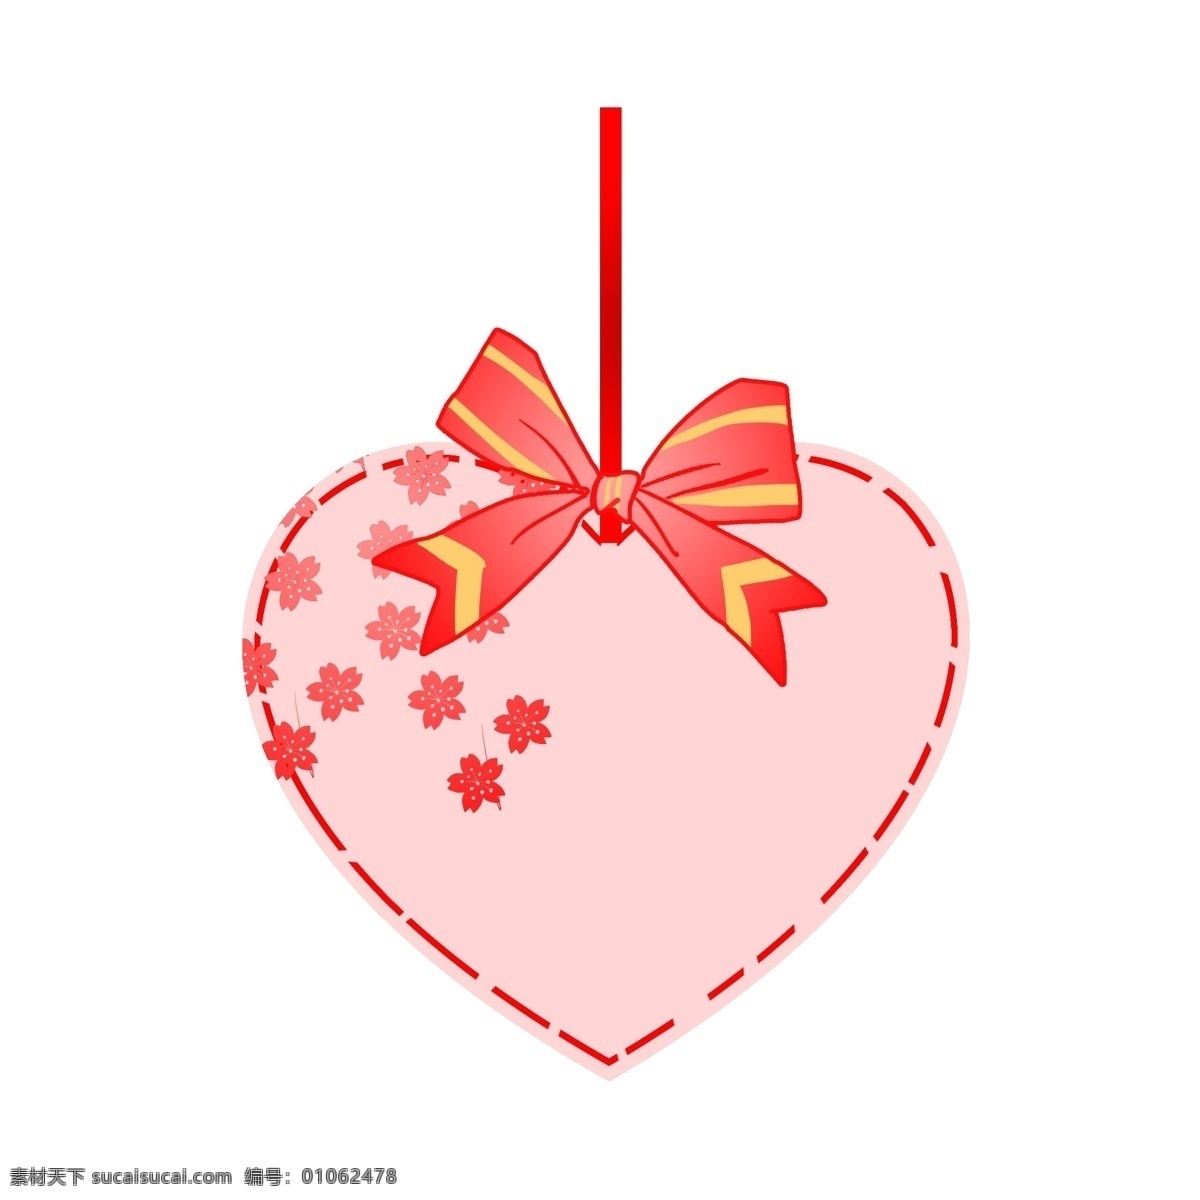 情人节 心形 卡片 插画 心形的卡片 红色的蝴蝶结 卡通插画 手绘 创意卡片插画 红色的花朵